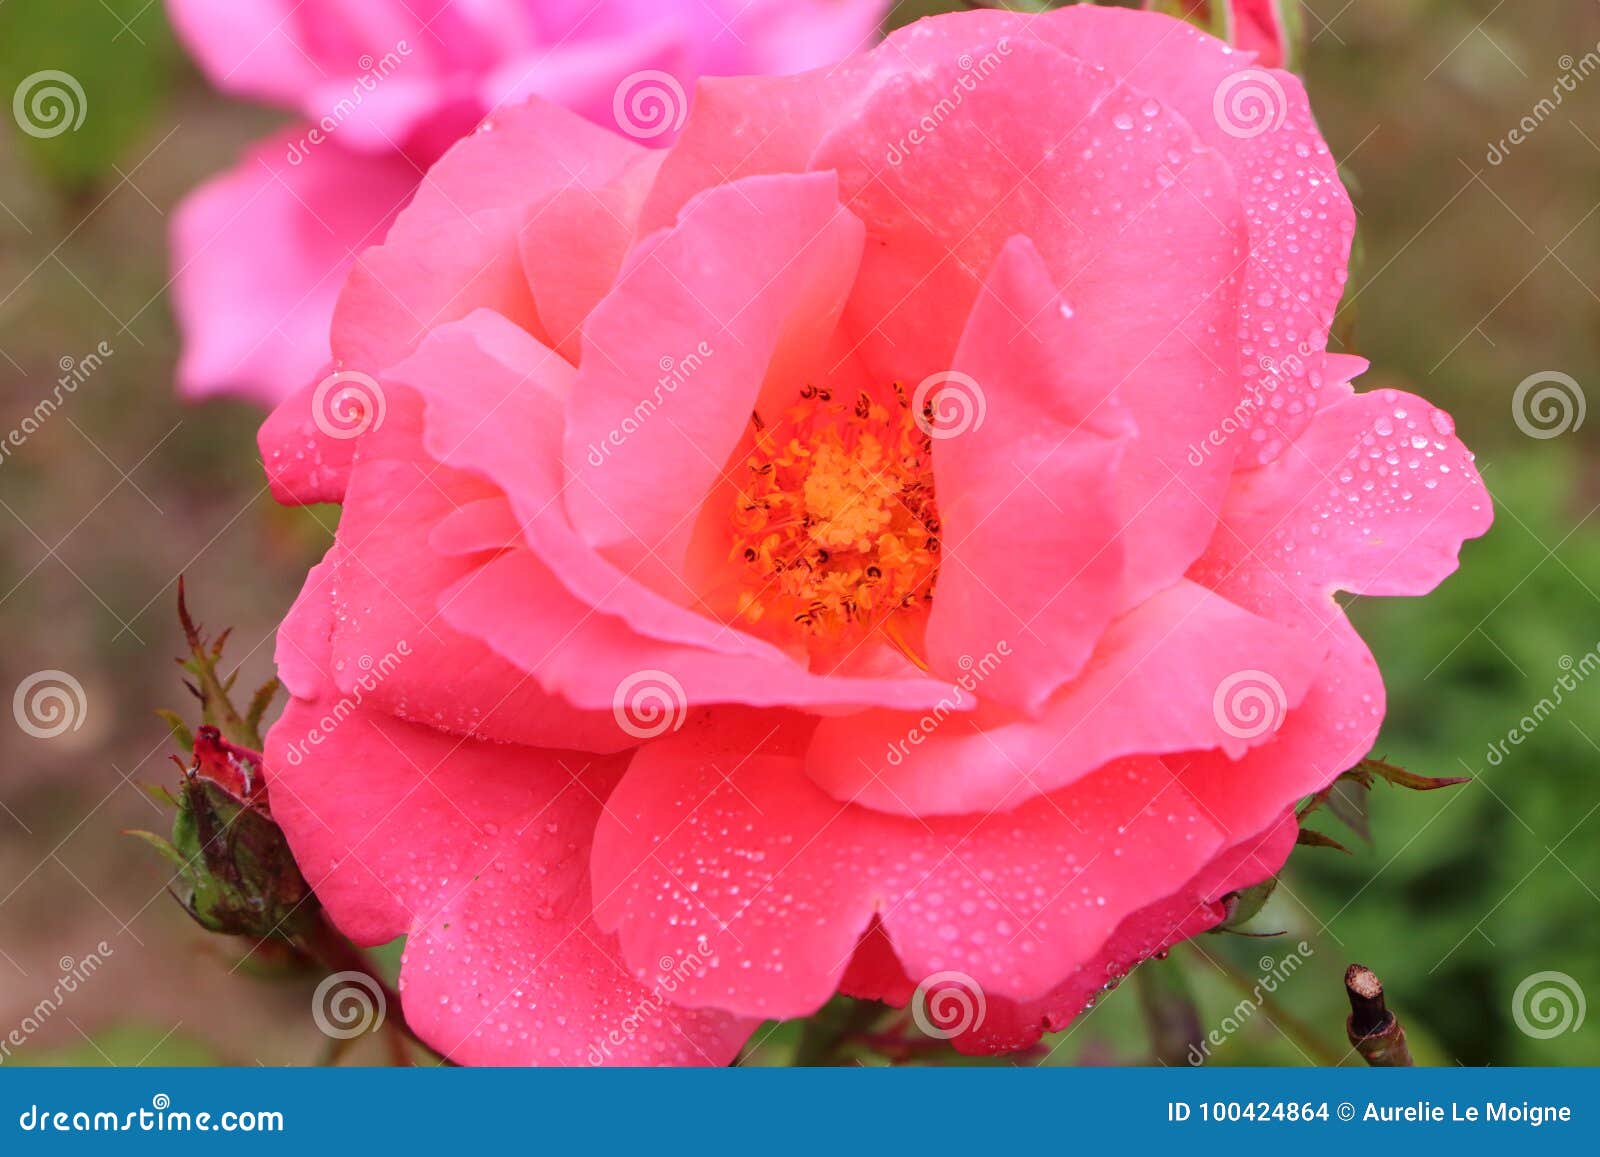 Fiore Della Rosa Di Rosa in Un Giardino Fotografia Stock - Immagine di ...